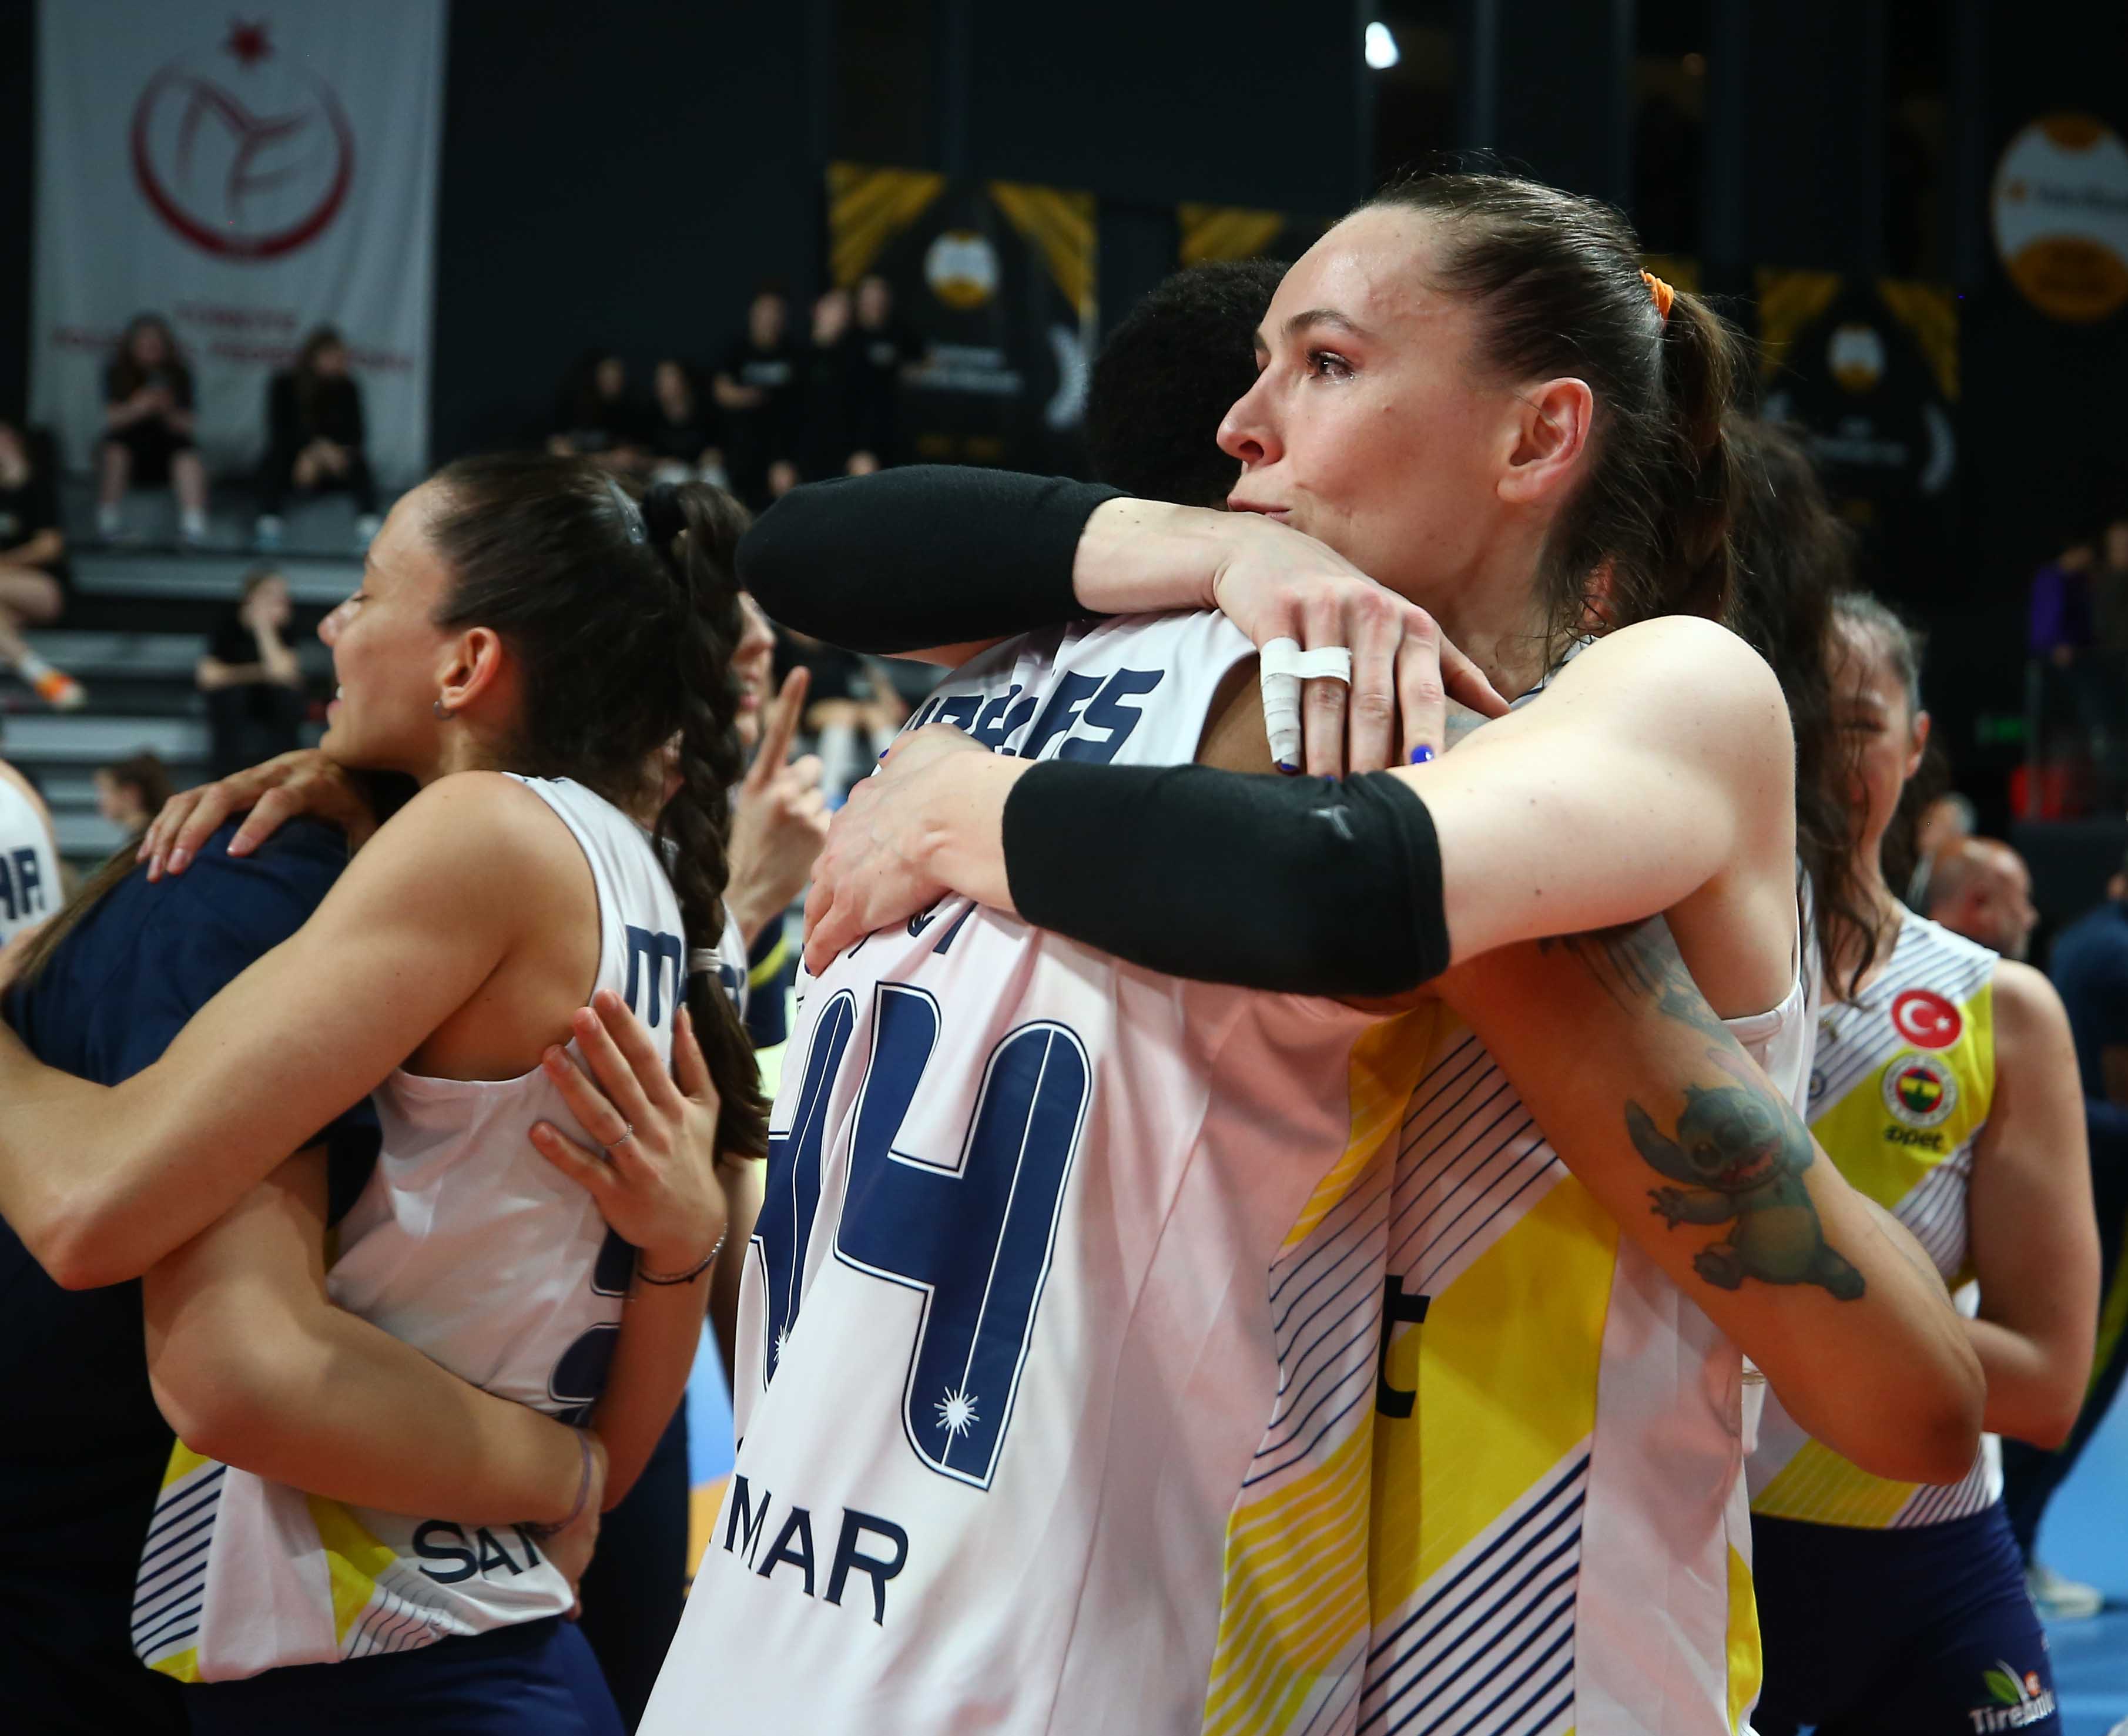 Fenerbahçe Opet Kadın Voleybol Takımımız, Misli.com Sultanlar Ligi’nde adını finale yazdırdı